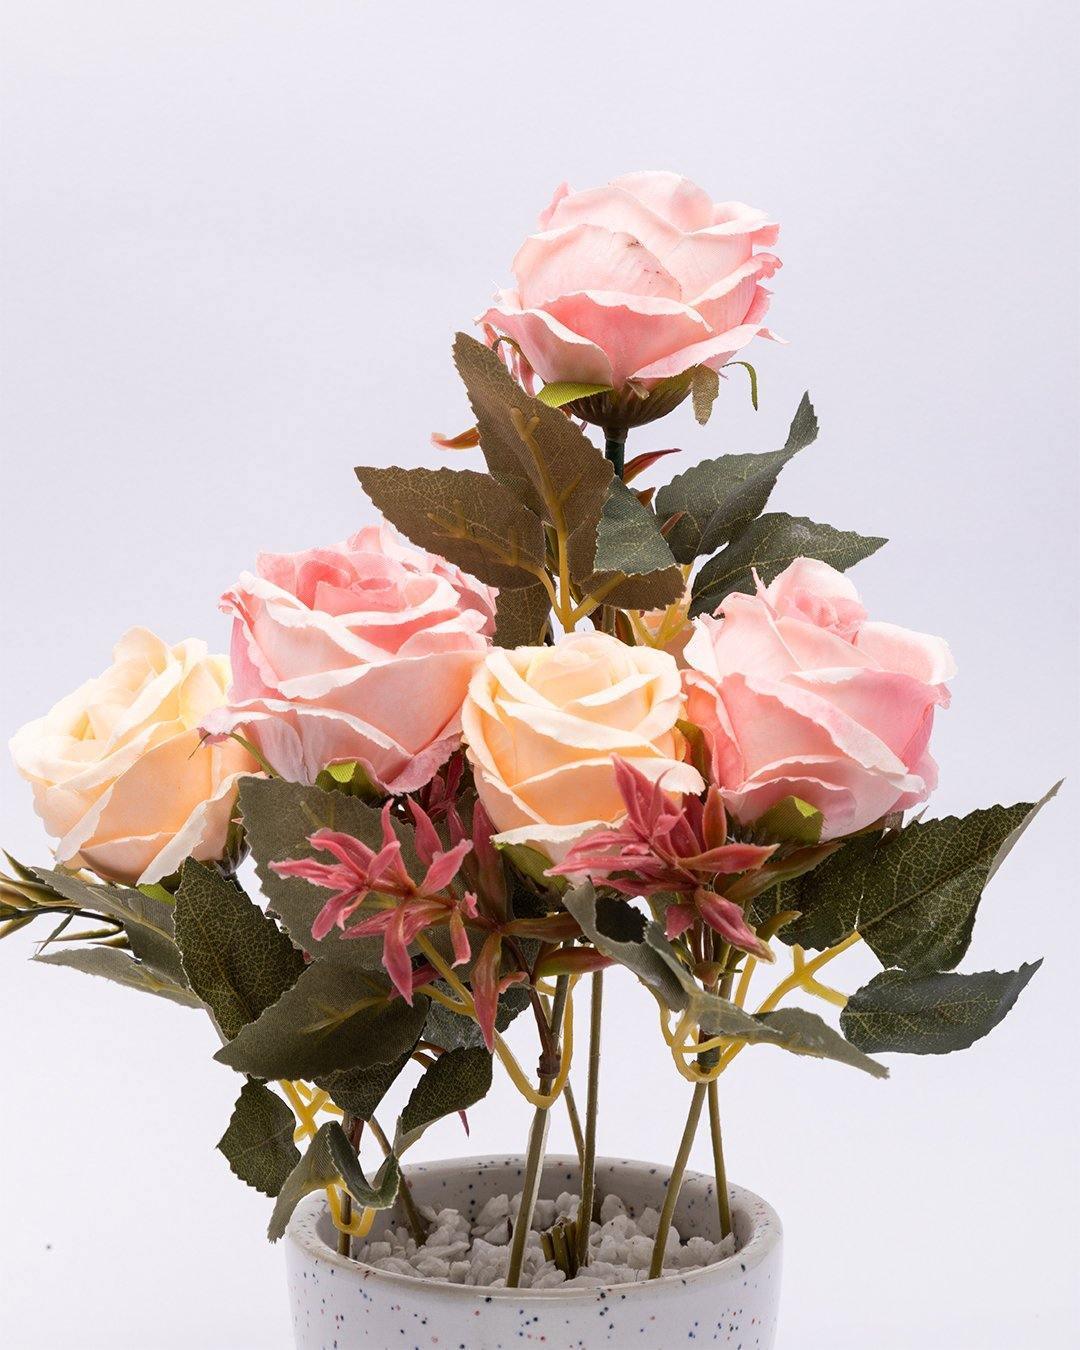 Artificial Plant with Ceramic Pot, Dry Rose Arrangement, Pink, Plastic Plant - MARKET 99